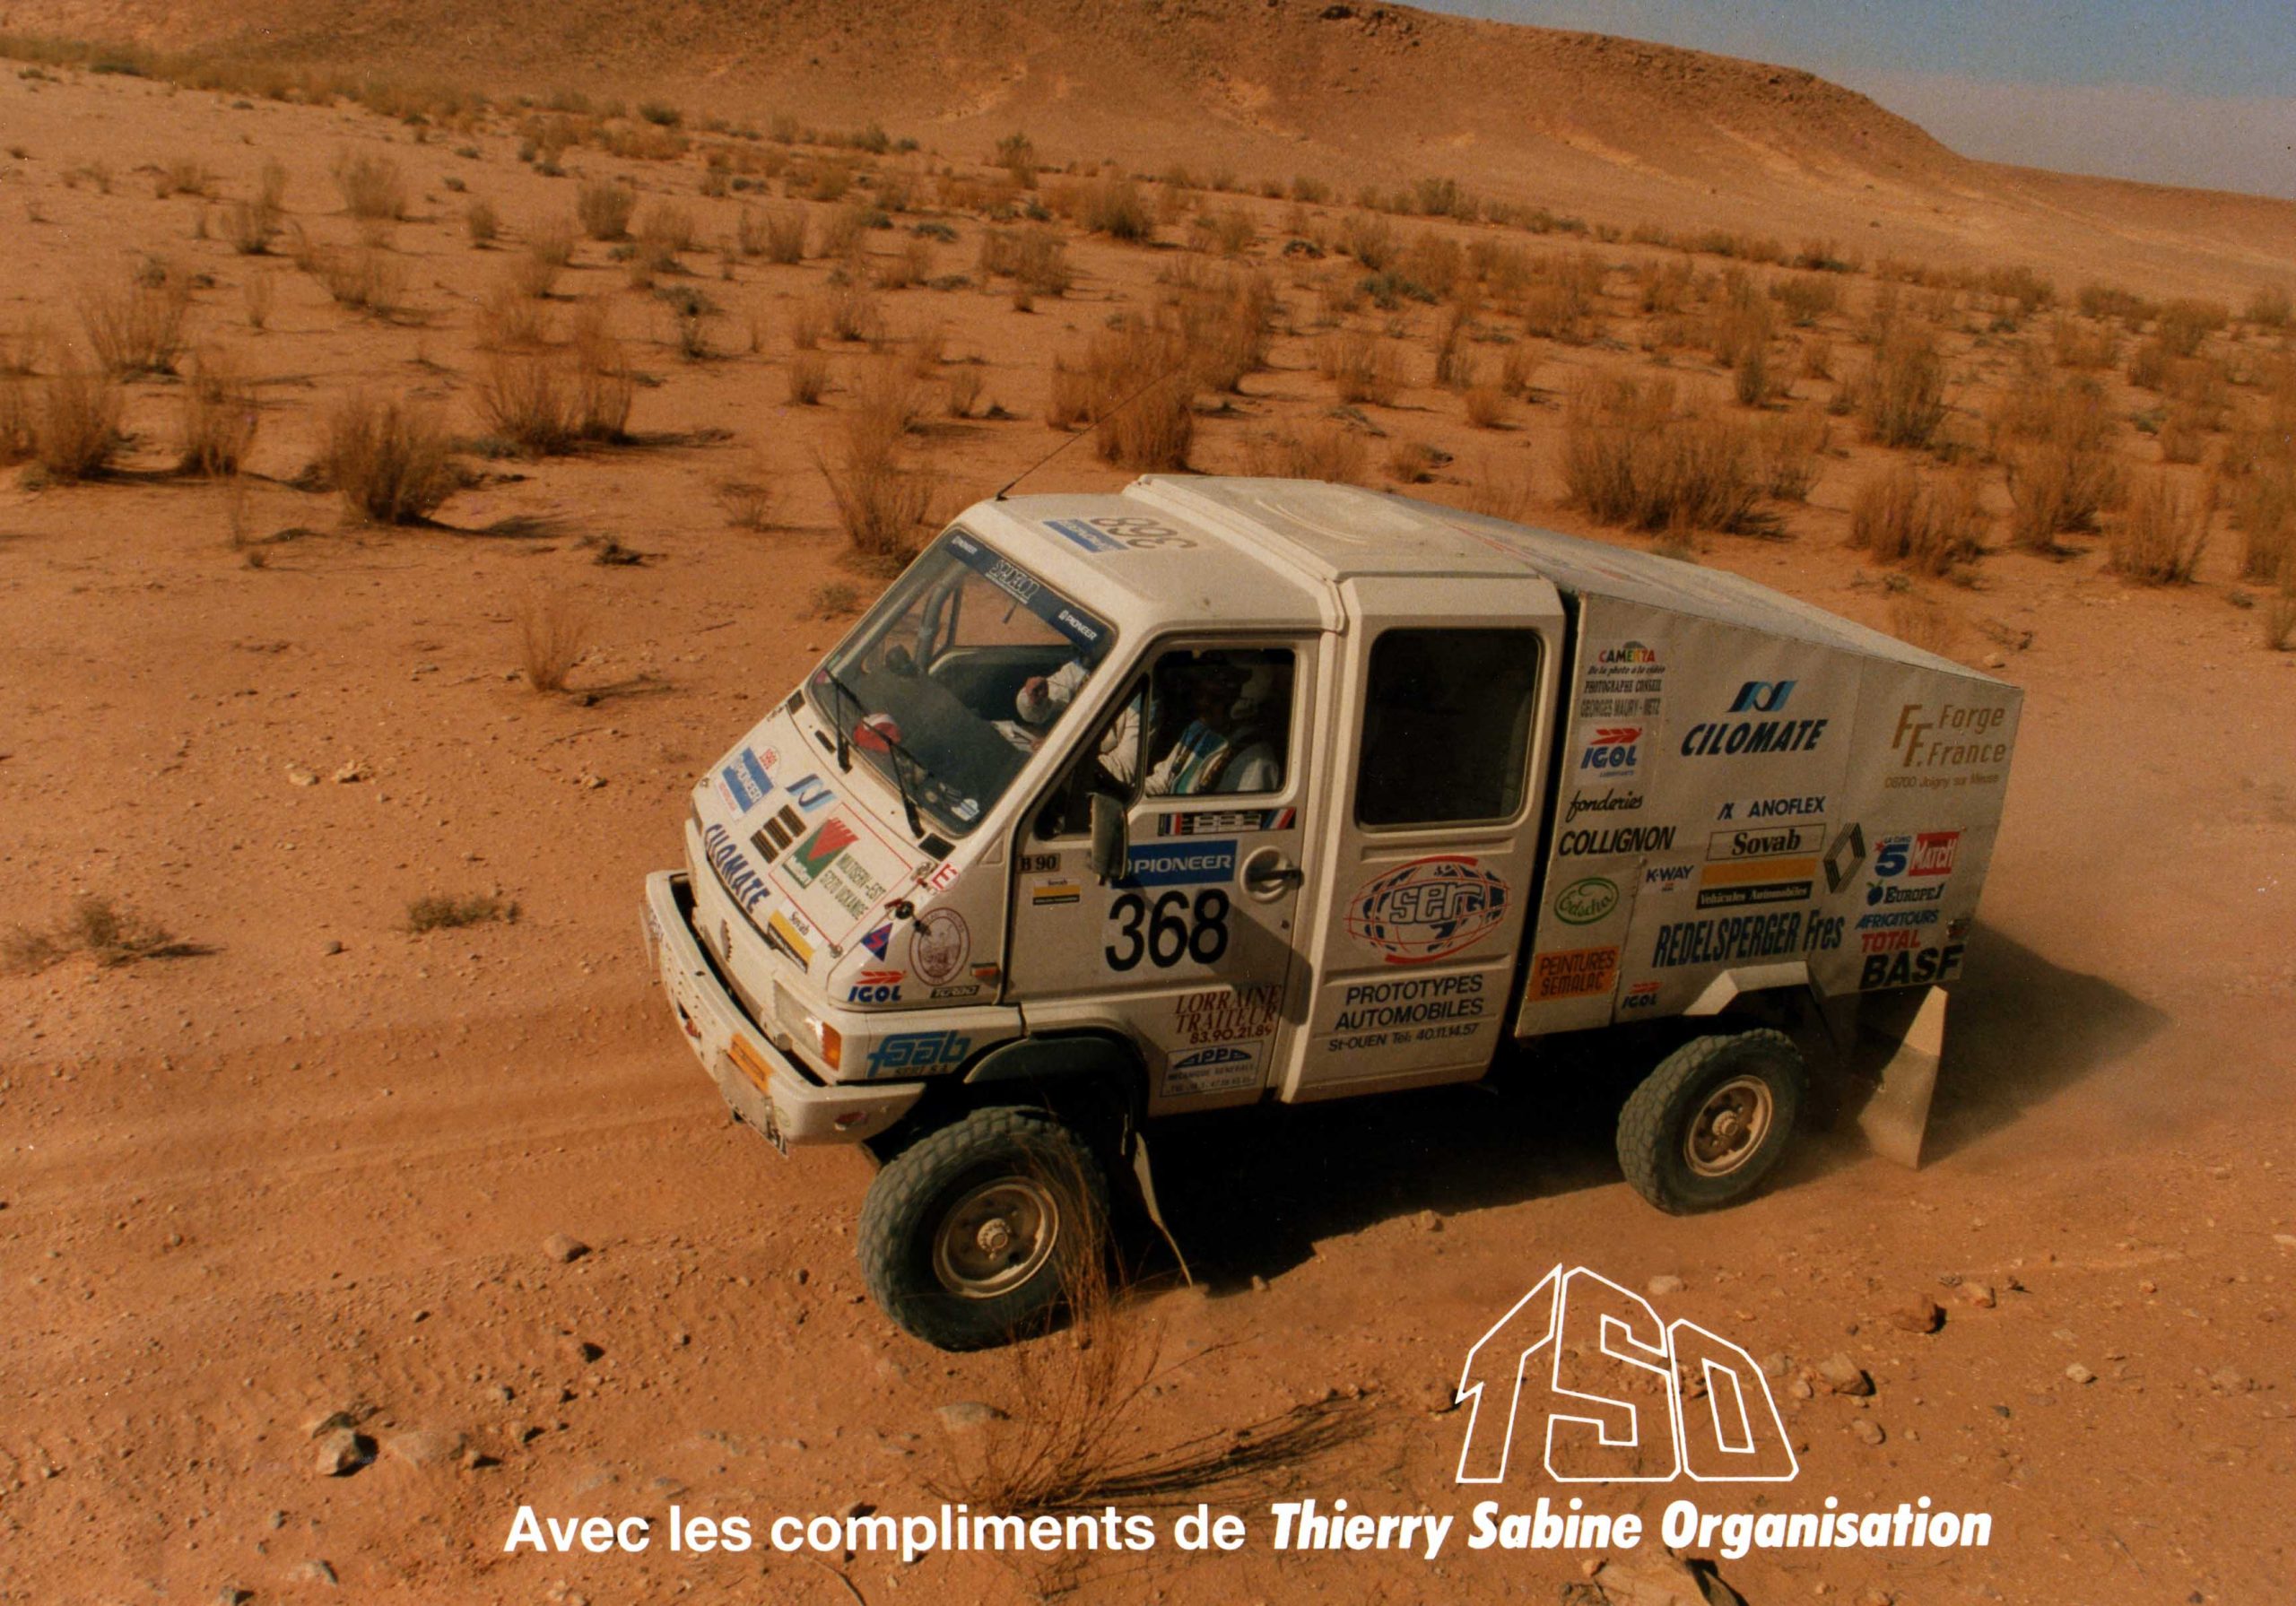 Paris Dakar 1991 participant NÂ°368 